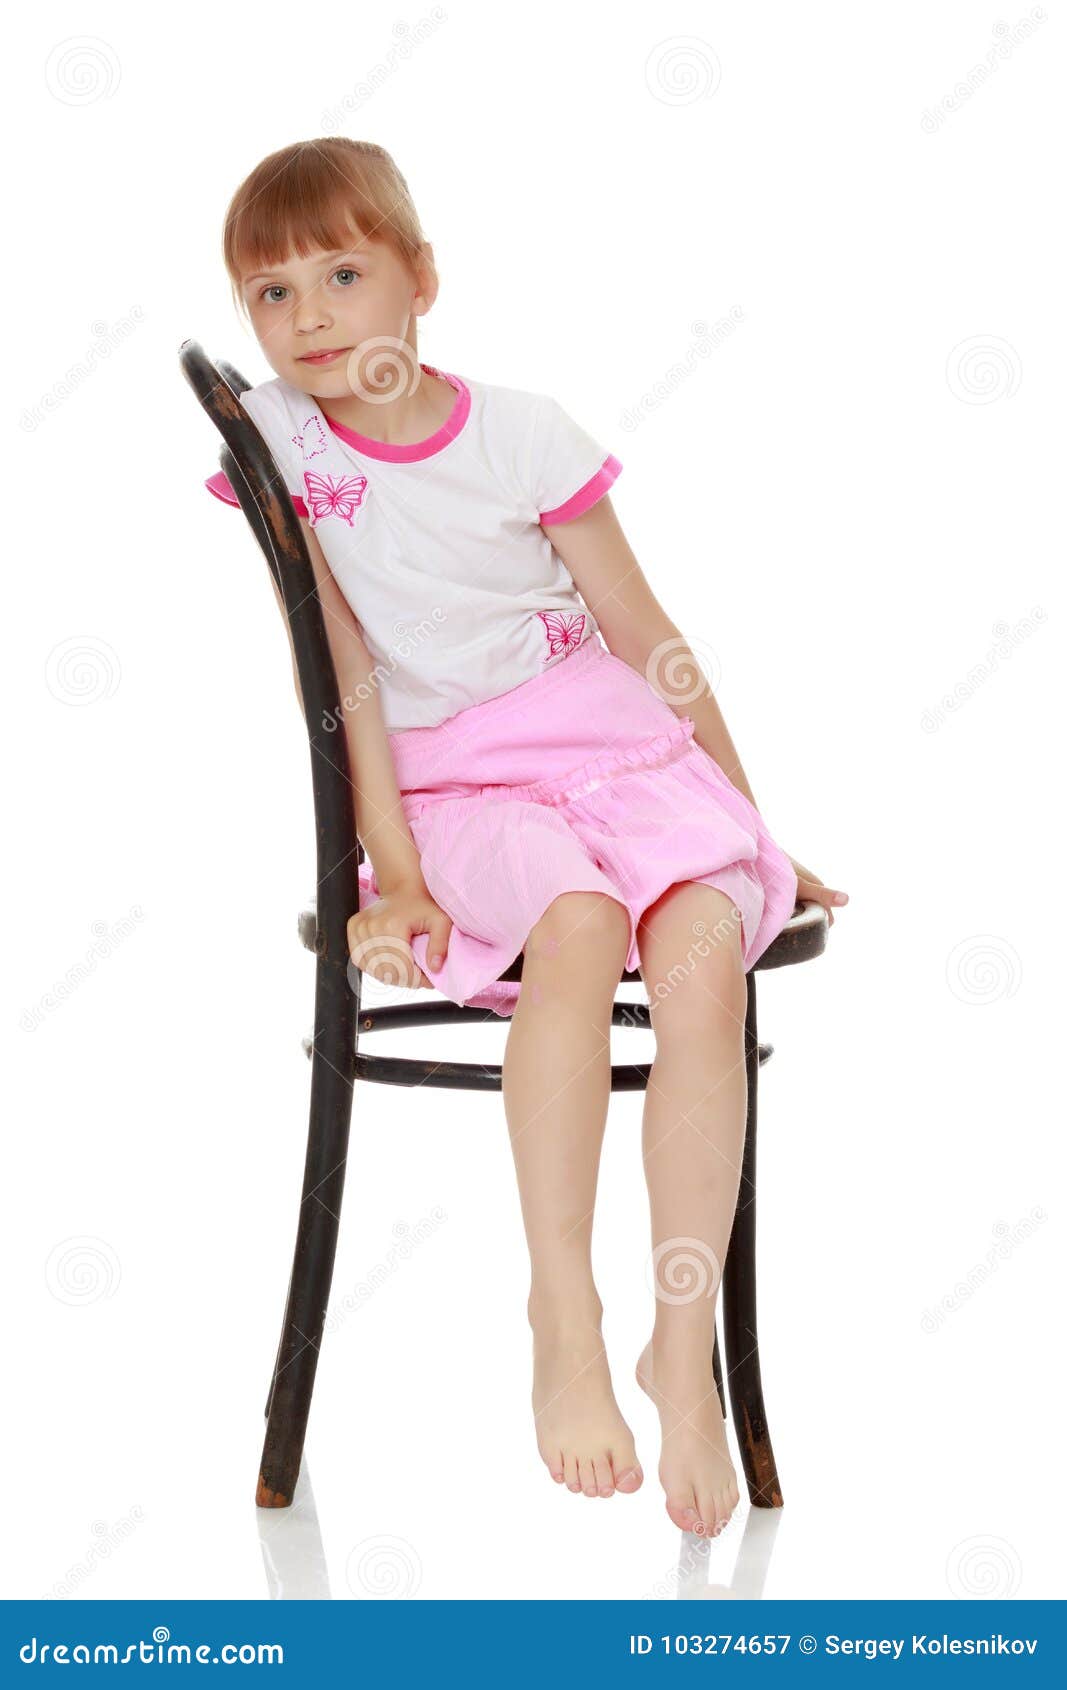 Ребенок сидит на ножках. Девочка на стуле. Девочка сидит. Маленькая девочка сидит на стуле.